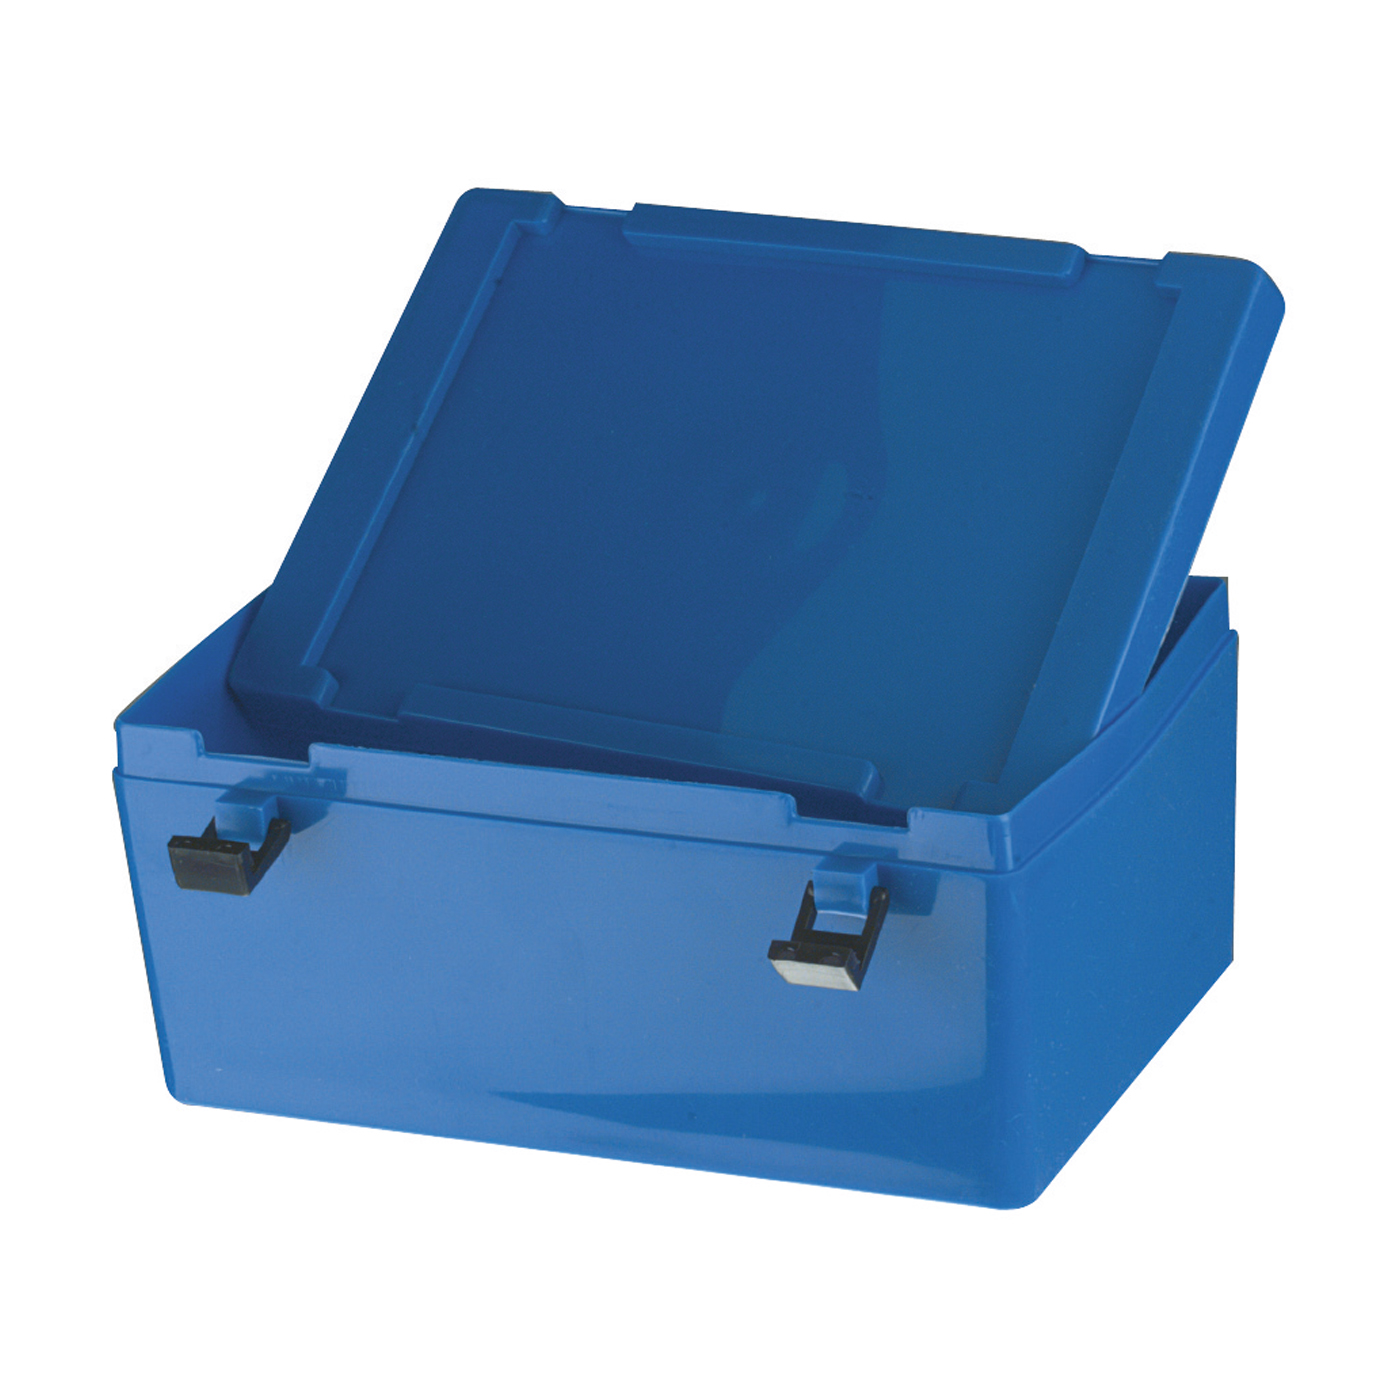 Dispatch Container, 1.3 l, Blue - 1 piece